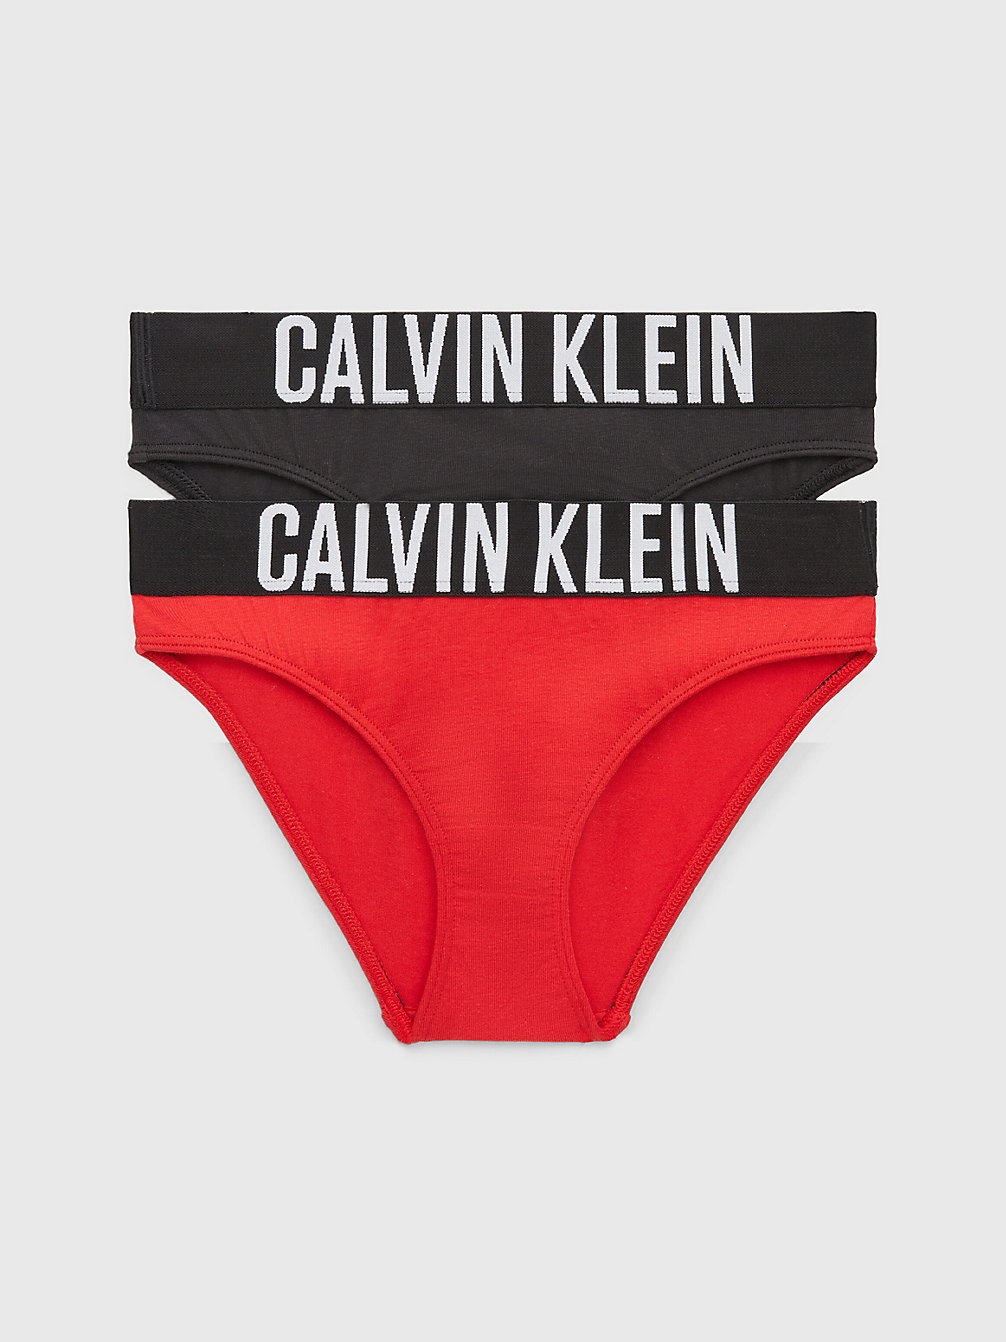 REDHOT/PVHBLACK Lot De 2 Culottes Pour Fille - Intense Power undefined filles Calvin Klein